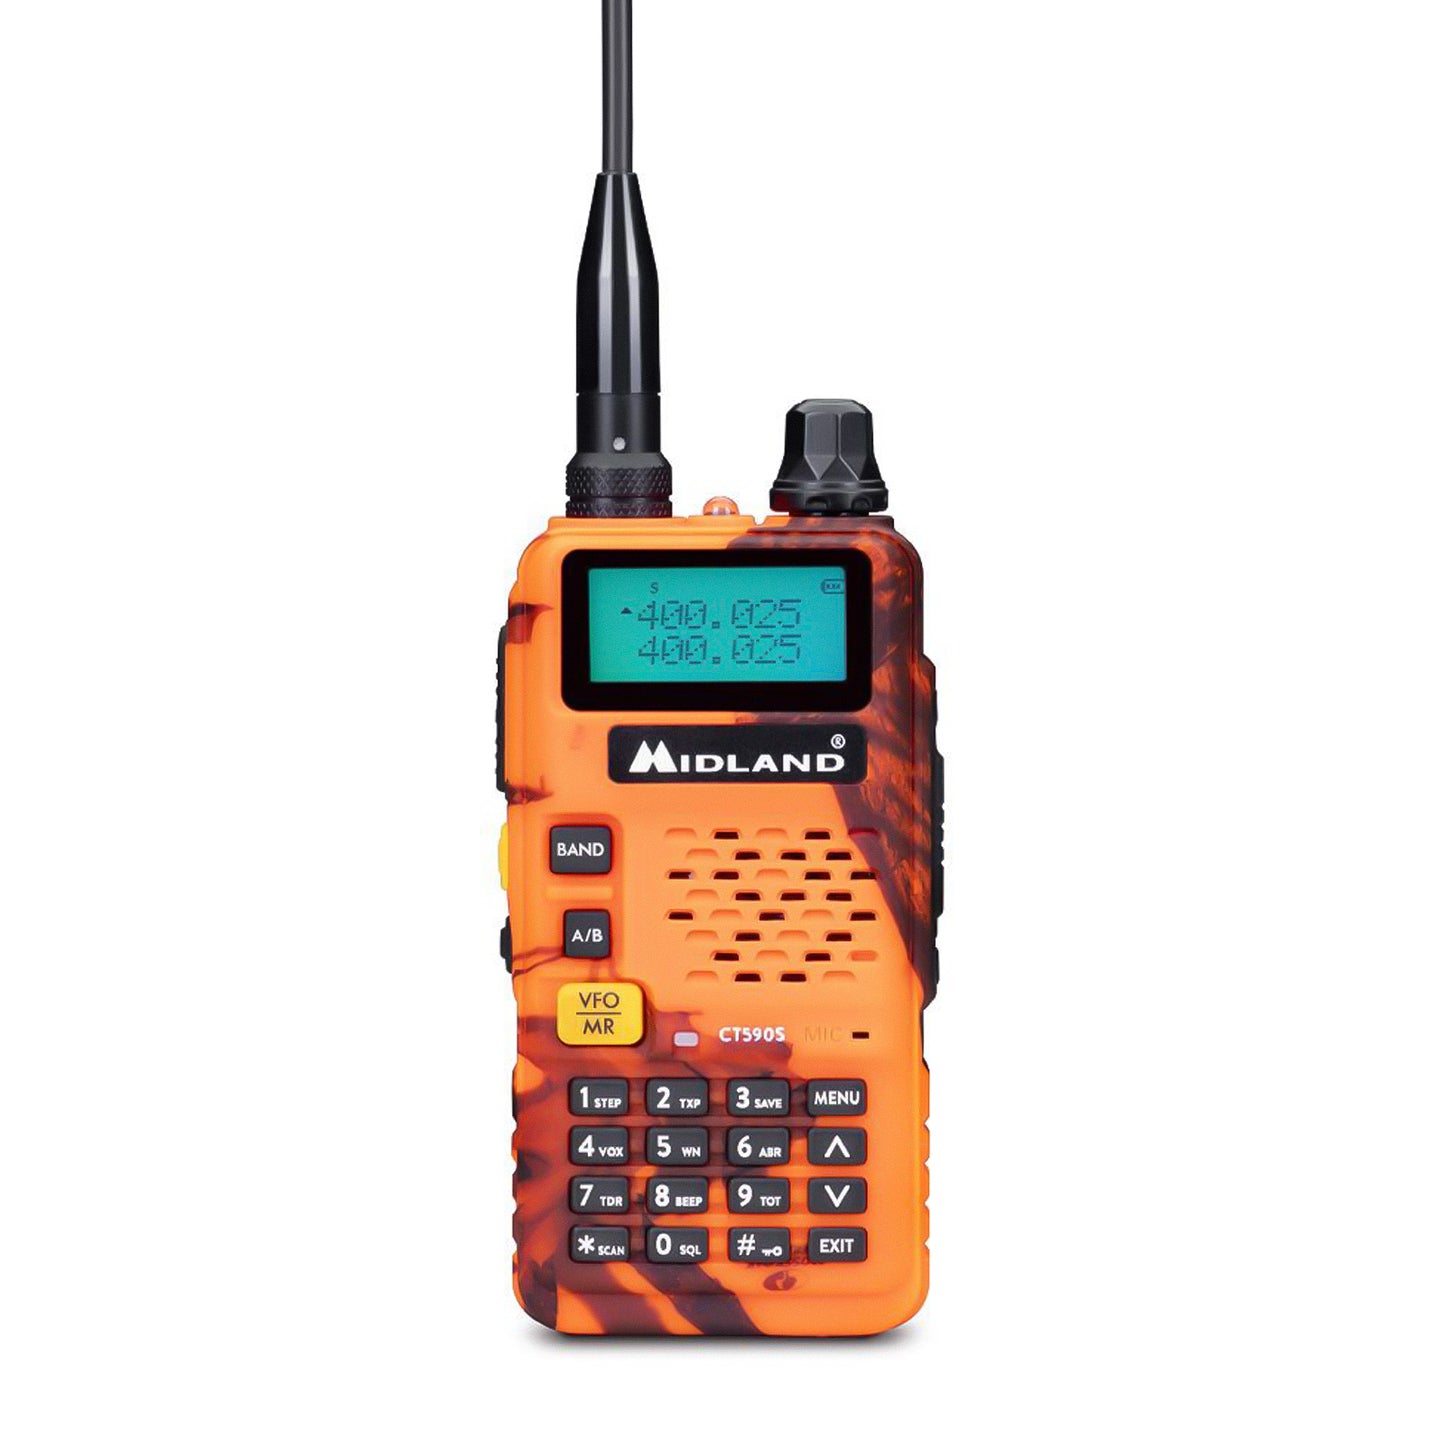 Midland CT590S BLAZE Ricetrasmittente dual band VHF/UHF con display LCD, batteria integrata 1500mAh, fino a 128 canali memorizzabili con attribuzione nome